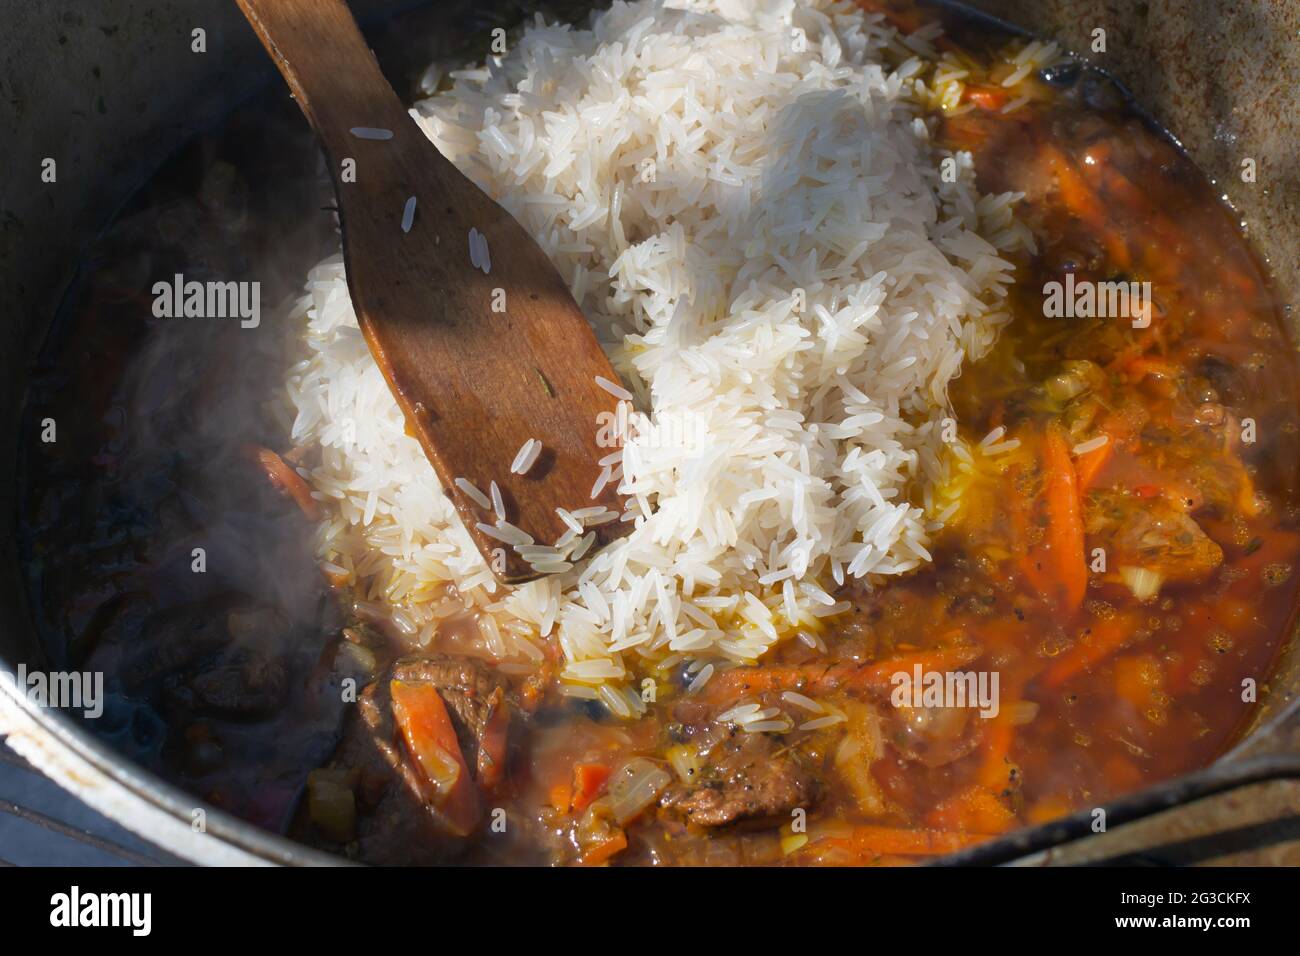 https://c8.alamy.com/compes/2g3ckfx/cocina-tradicional-pilaf-oriental-en-un-caldero-sobre-un-fuego-el-arroz-lavado-se-vierte-en-un-zervak-para-la-carne-y-las-verduras-guisadas-2g3ckfx.jpg